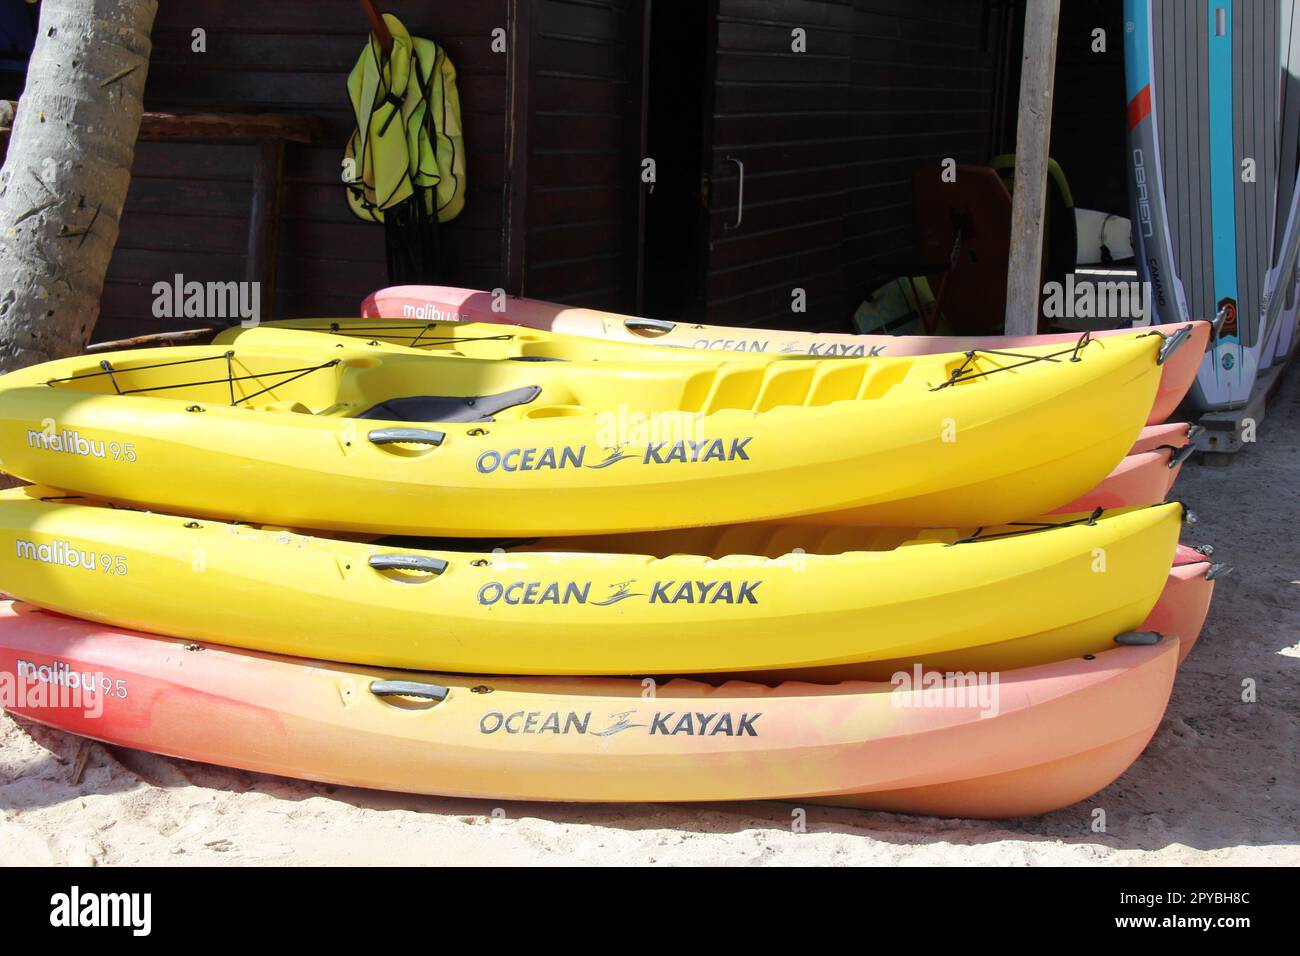 ocean kayaks on the beach Stock Photo